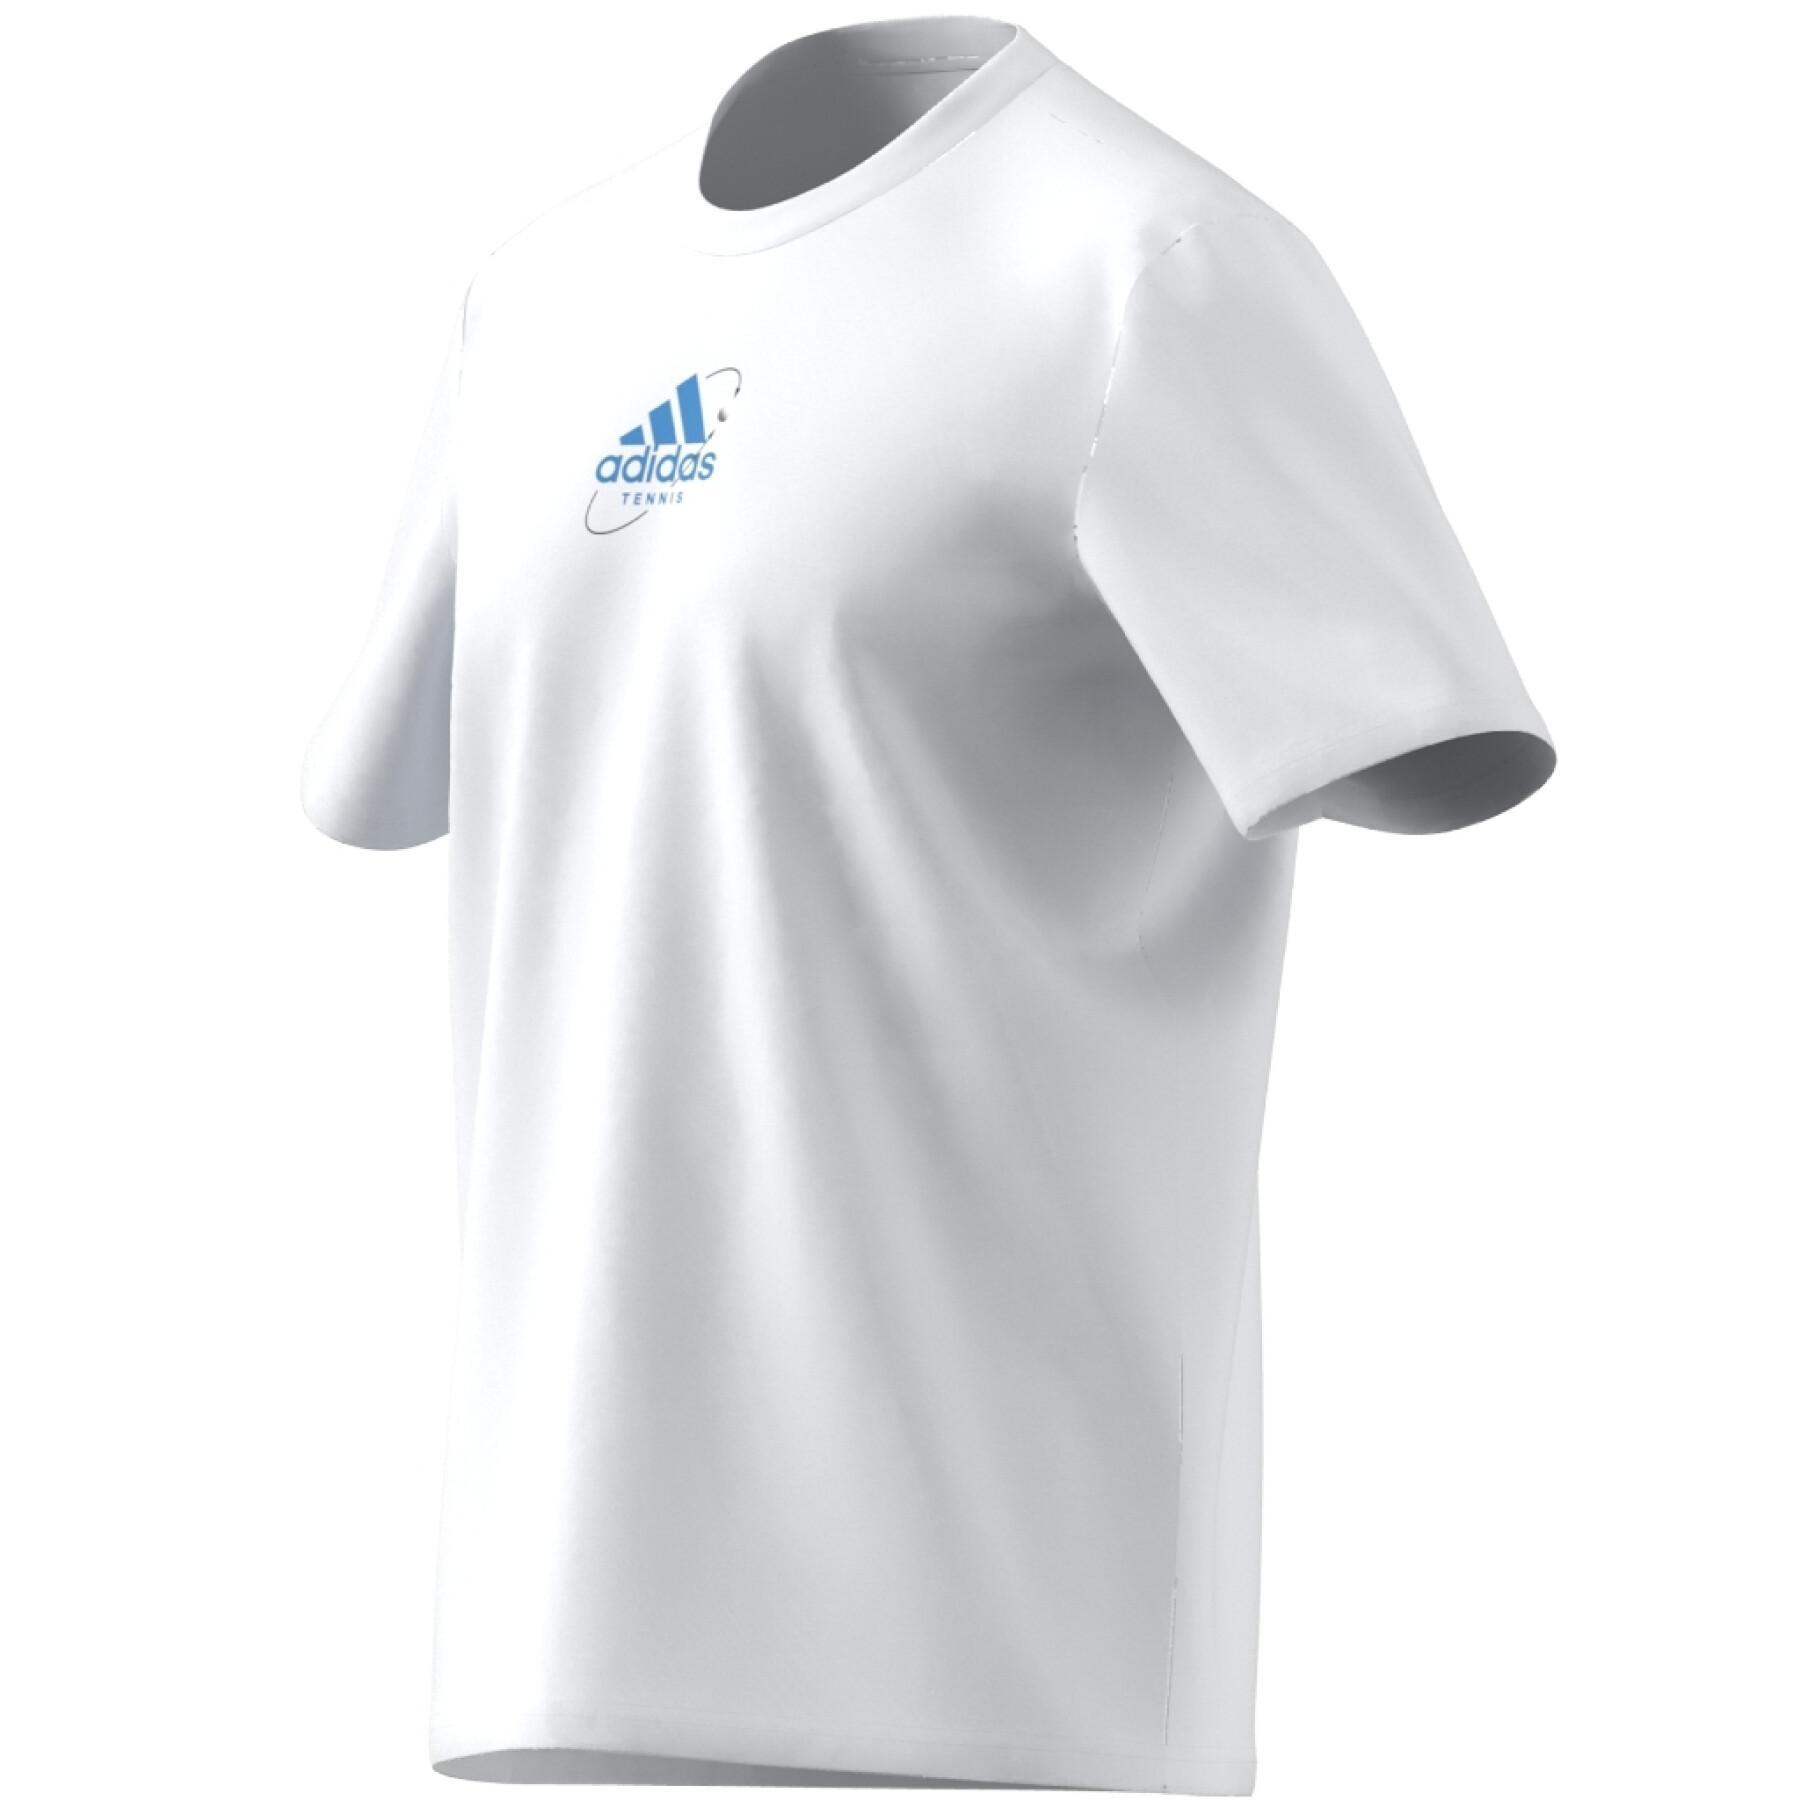 Camiseta gráfica adidas Thiem Logo